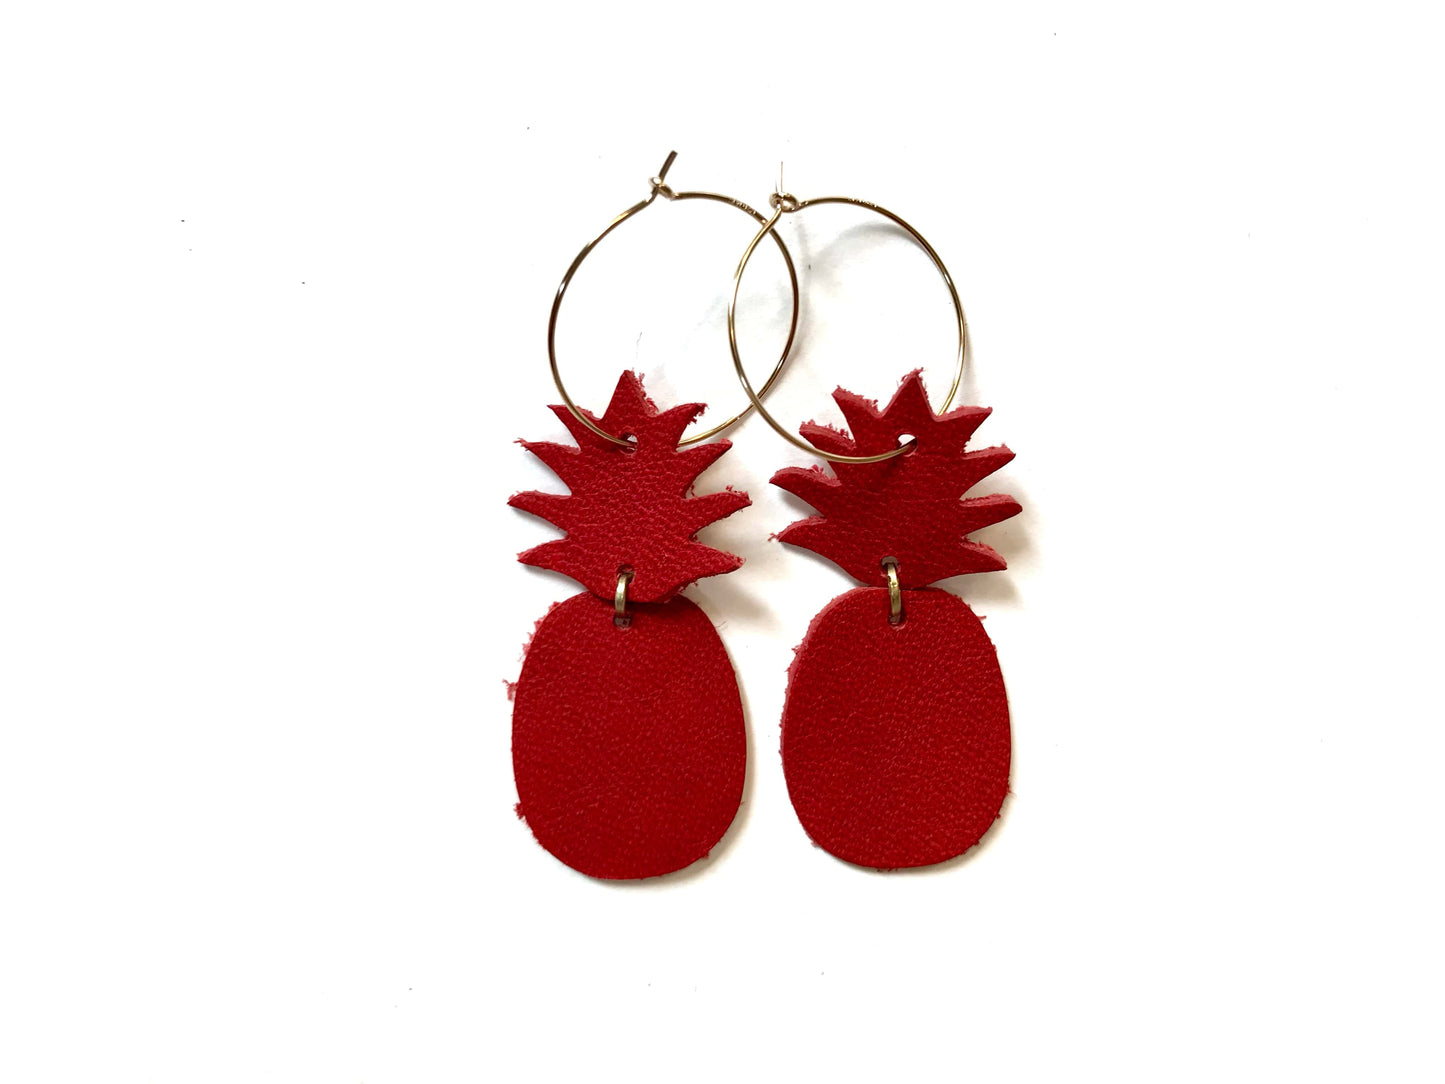 Vicki Jean leather pineapple hoop earrings